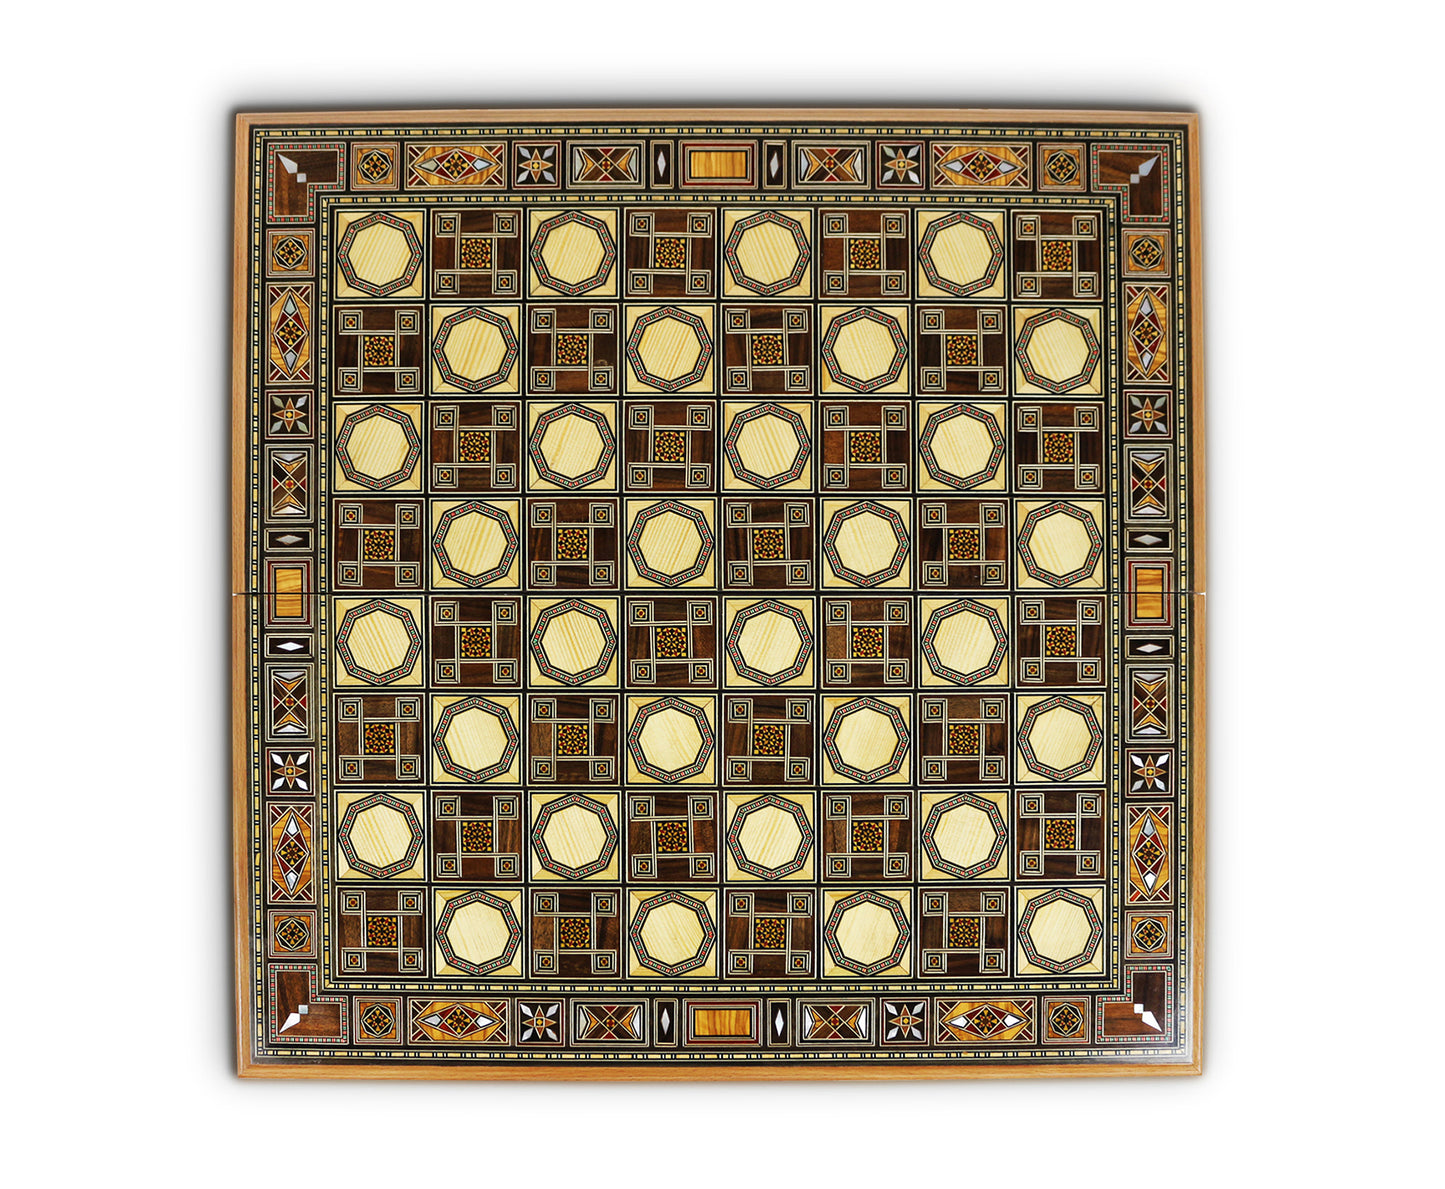 Holz Backgammon/Schach Brett BK520 F